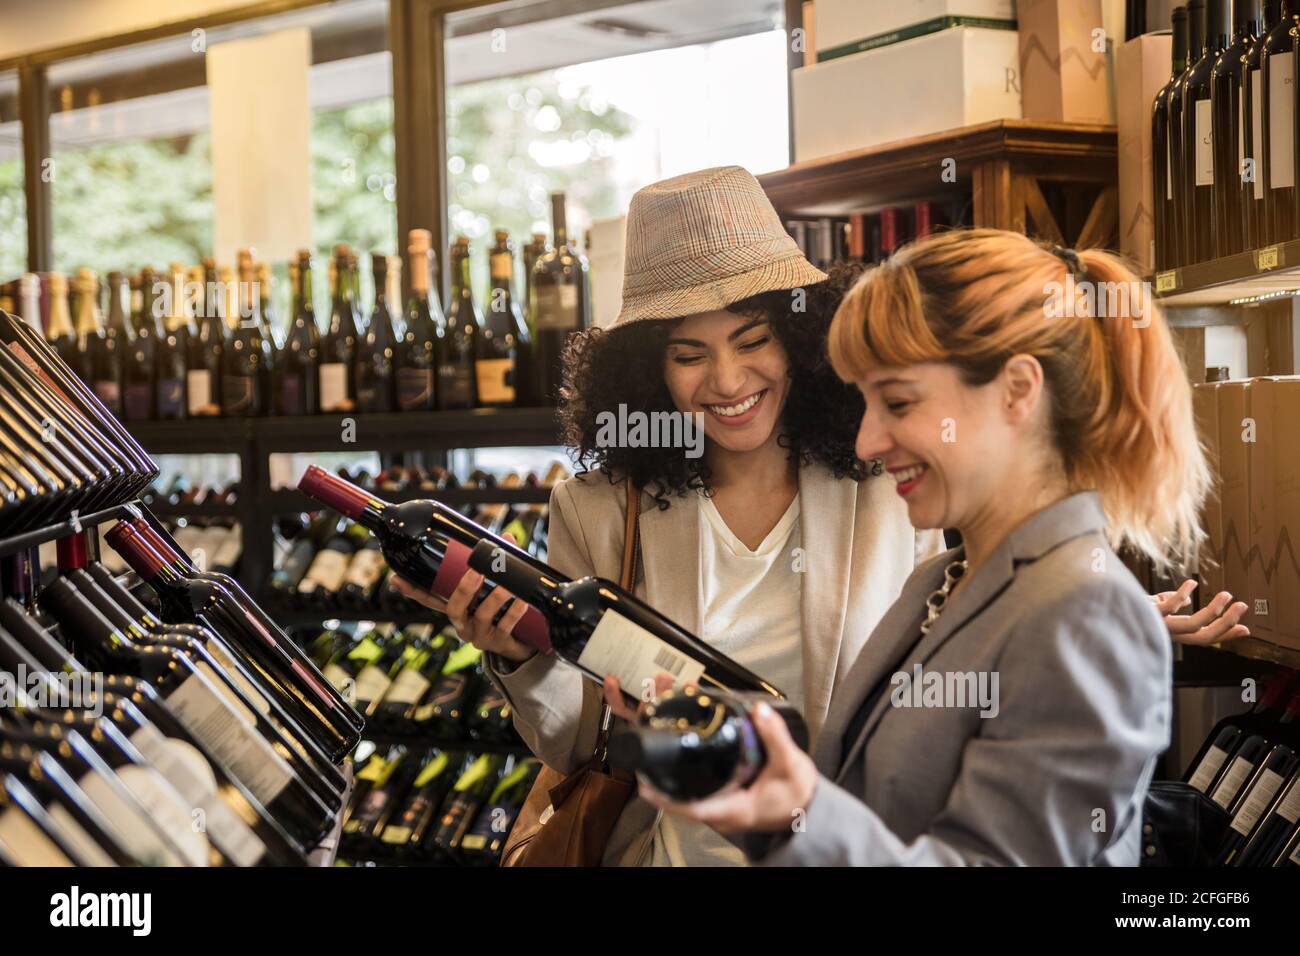 Vue latérale d'une femme joyeuse et variée explorant des étagères de marché du vin avec des bouteilles de vin. Banque D'Images